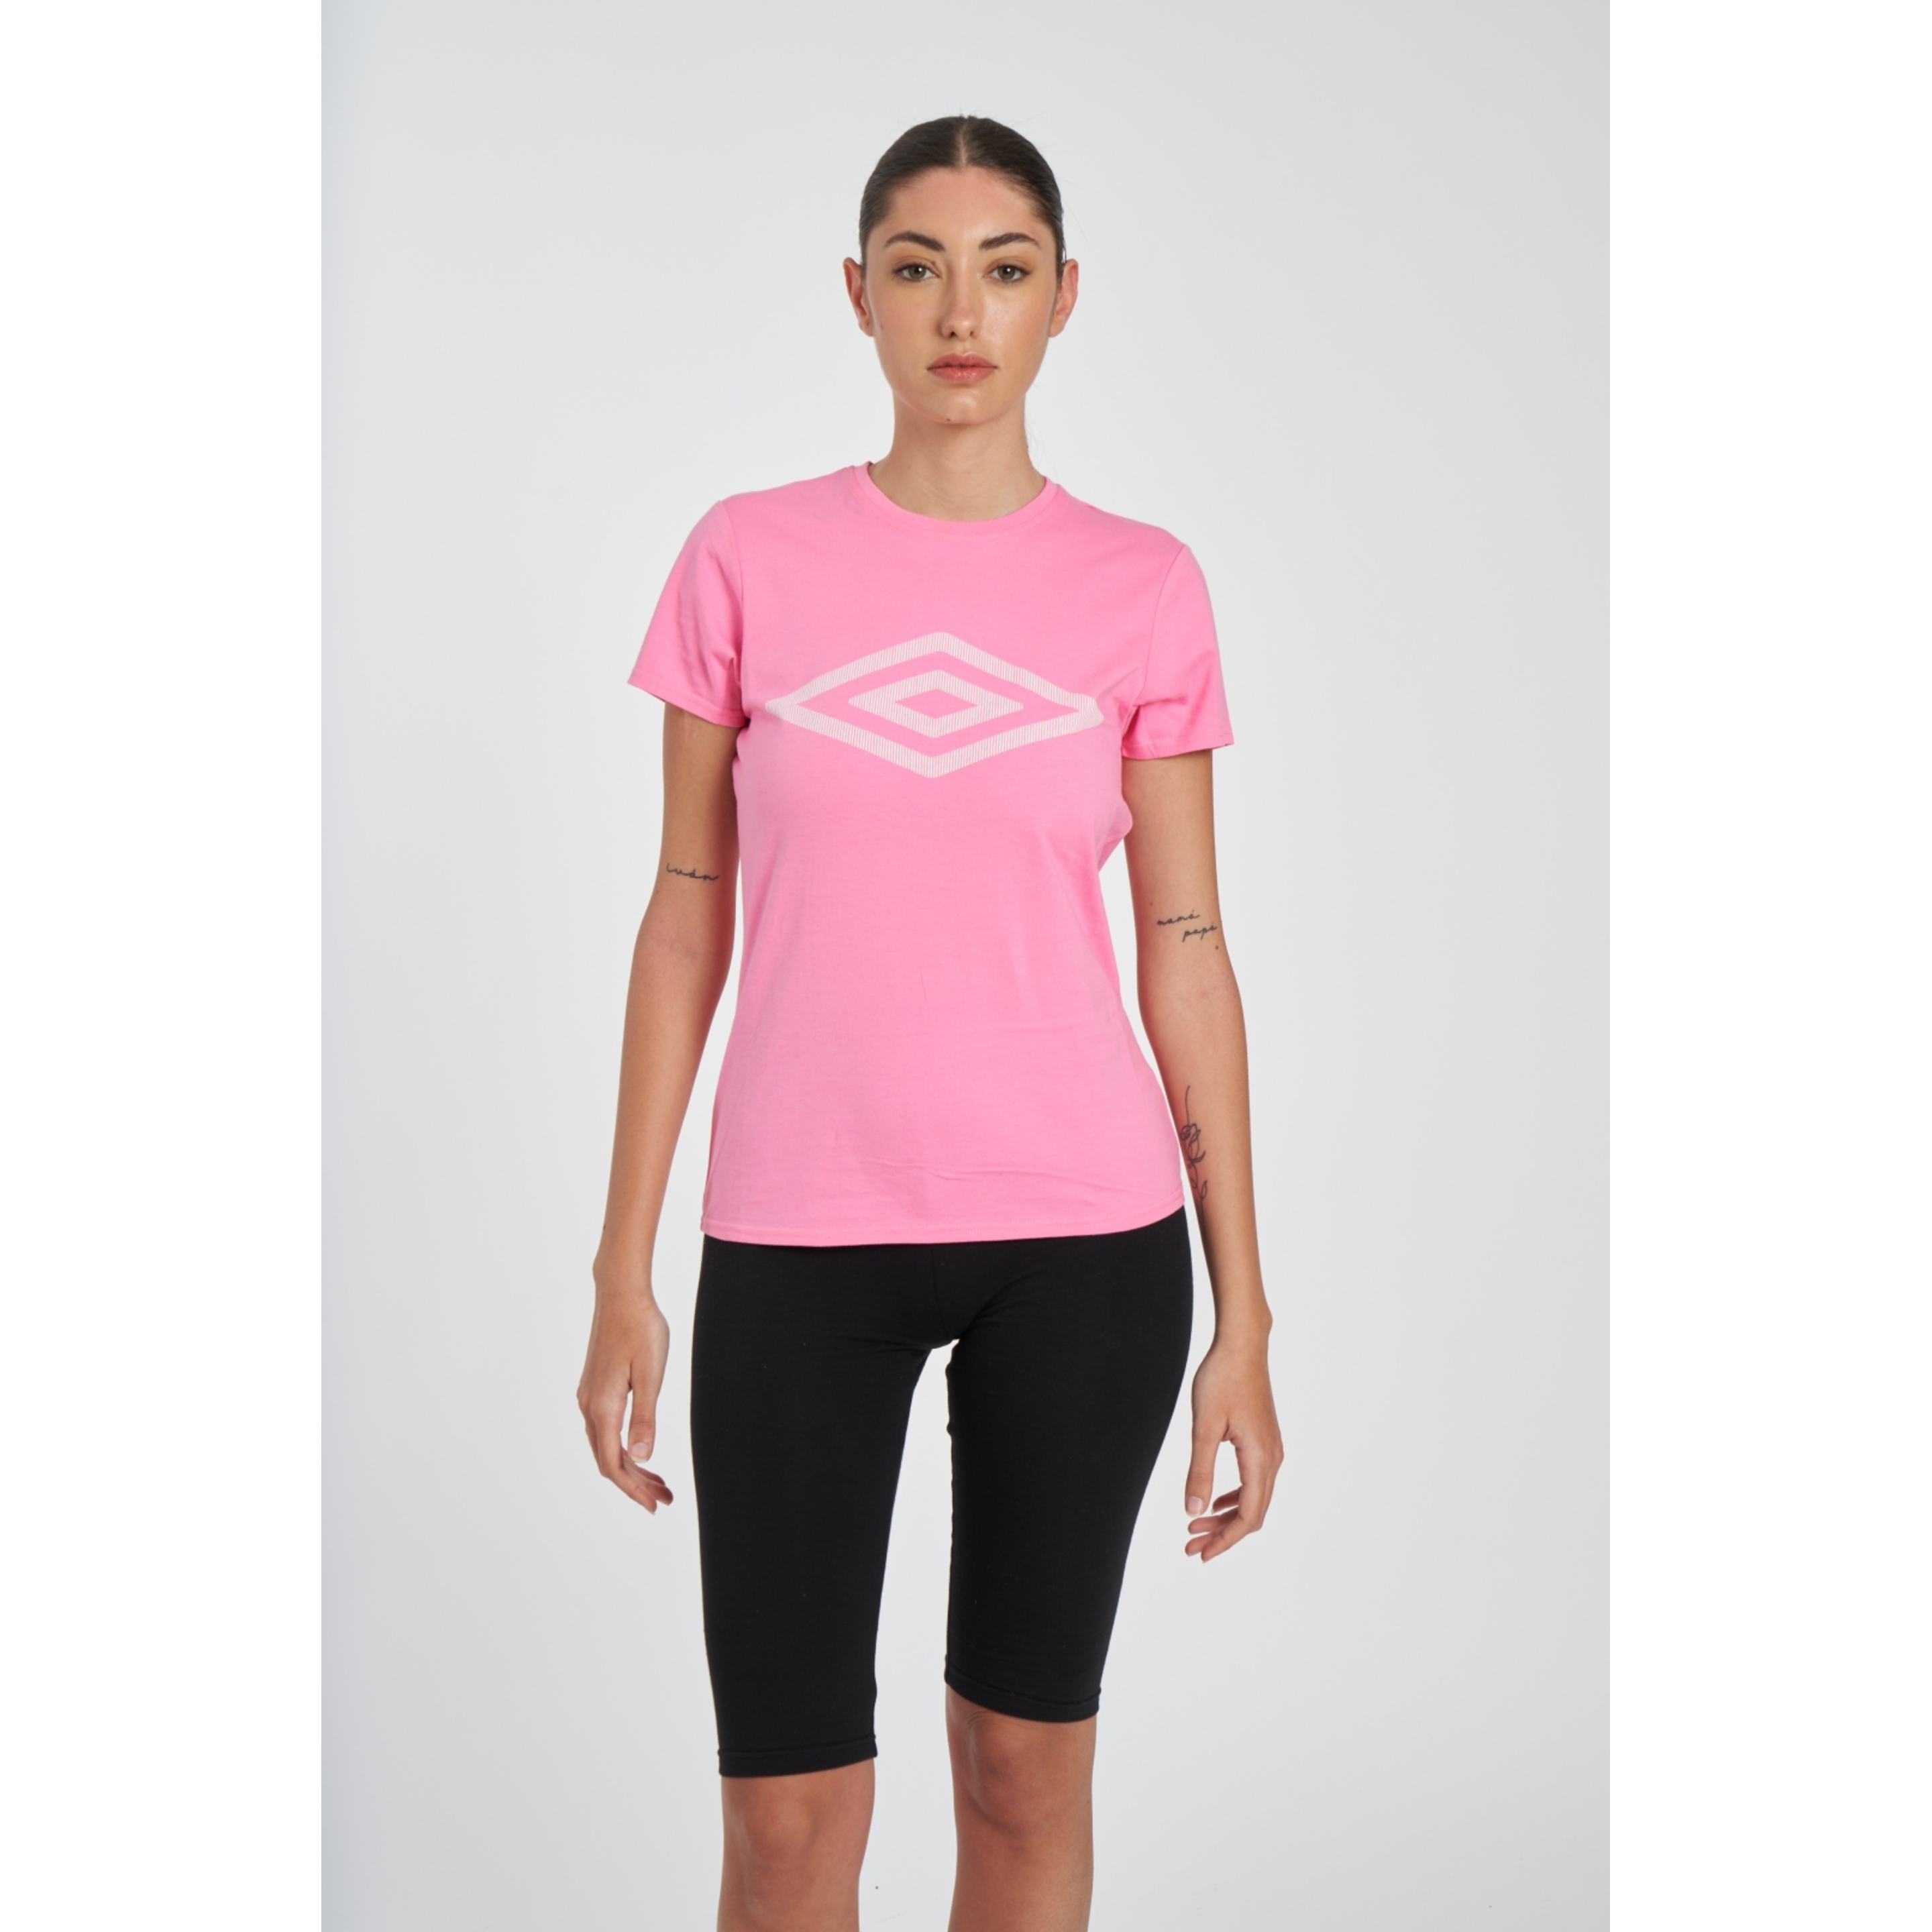 Camiseta Umbro Eridanus - rosa - 